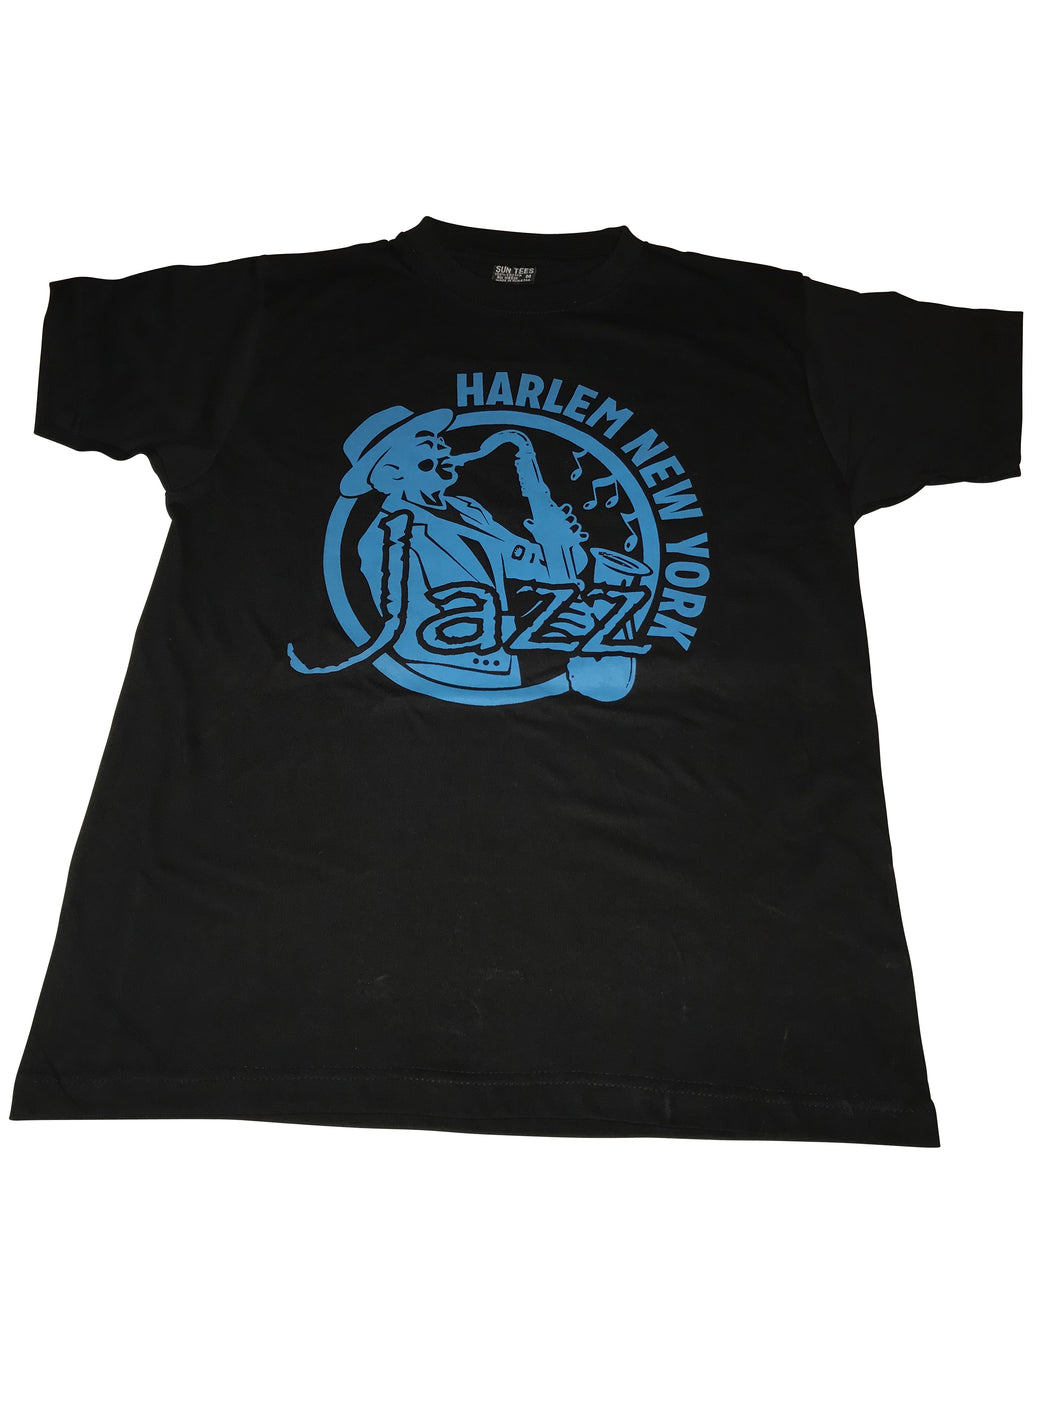 Harlem Jazzman T-shirt - Mean-Tees.com